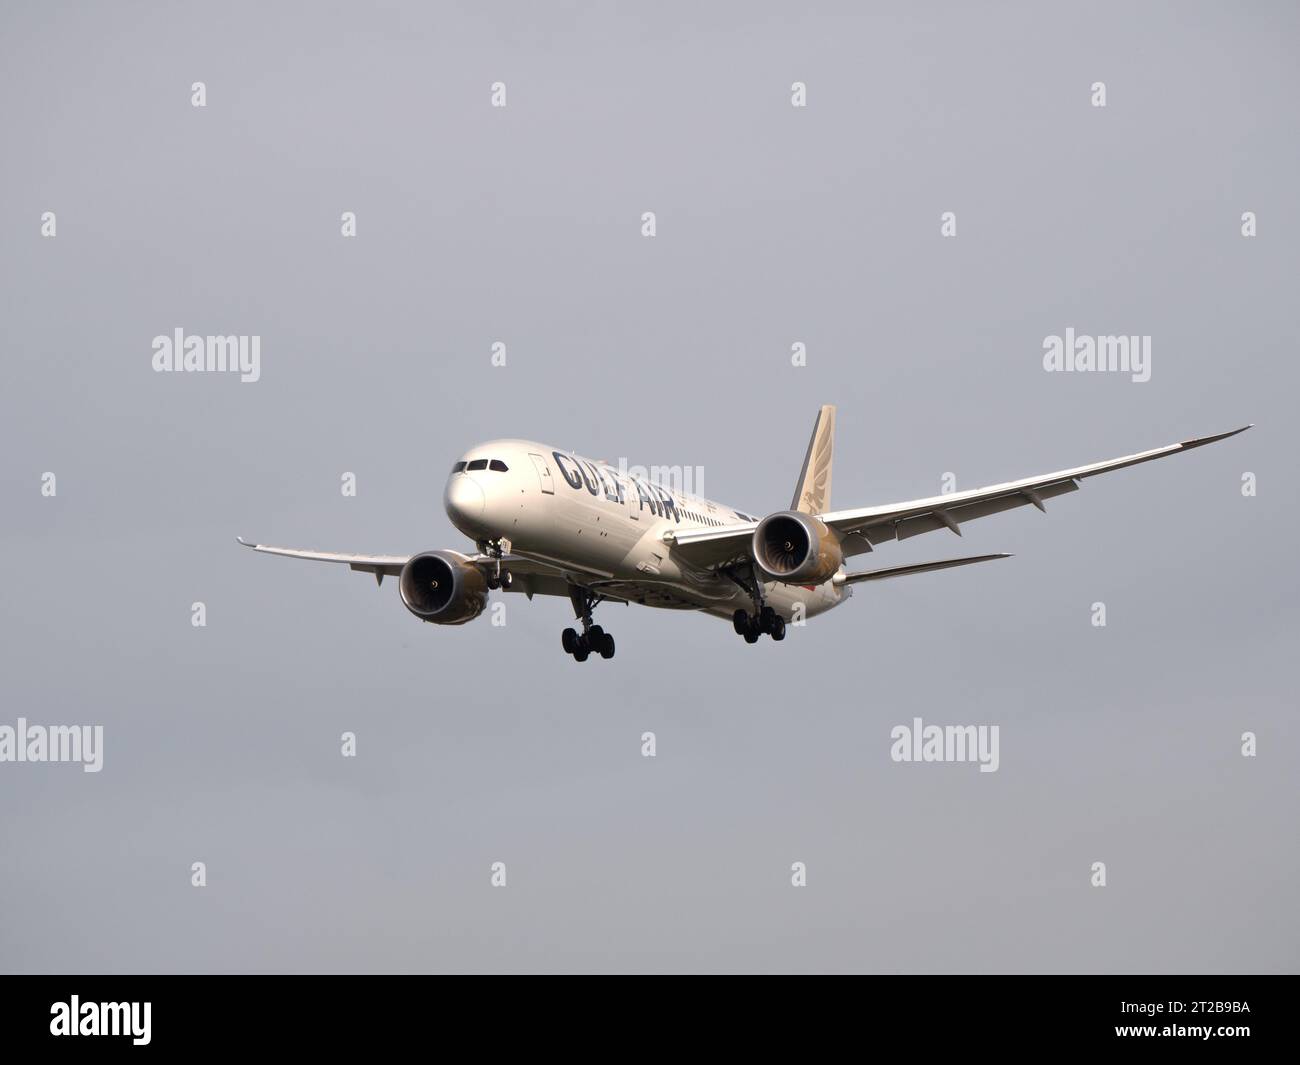 Aéroport de Londres Heathrow Hounslow Gulf Air, compagnie aérienne de Bahreïn, avion approchant de la piste à Heathrow Banque D'Images